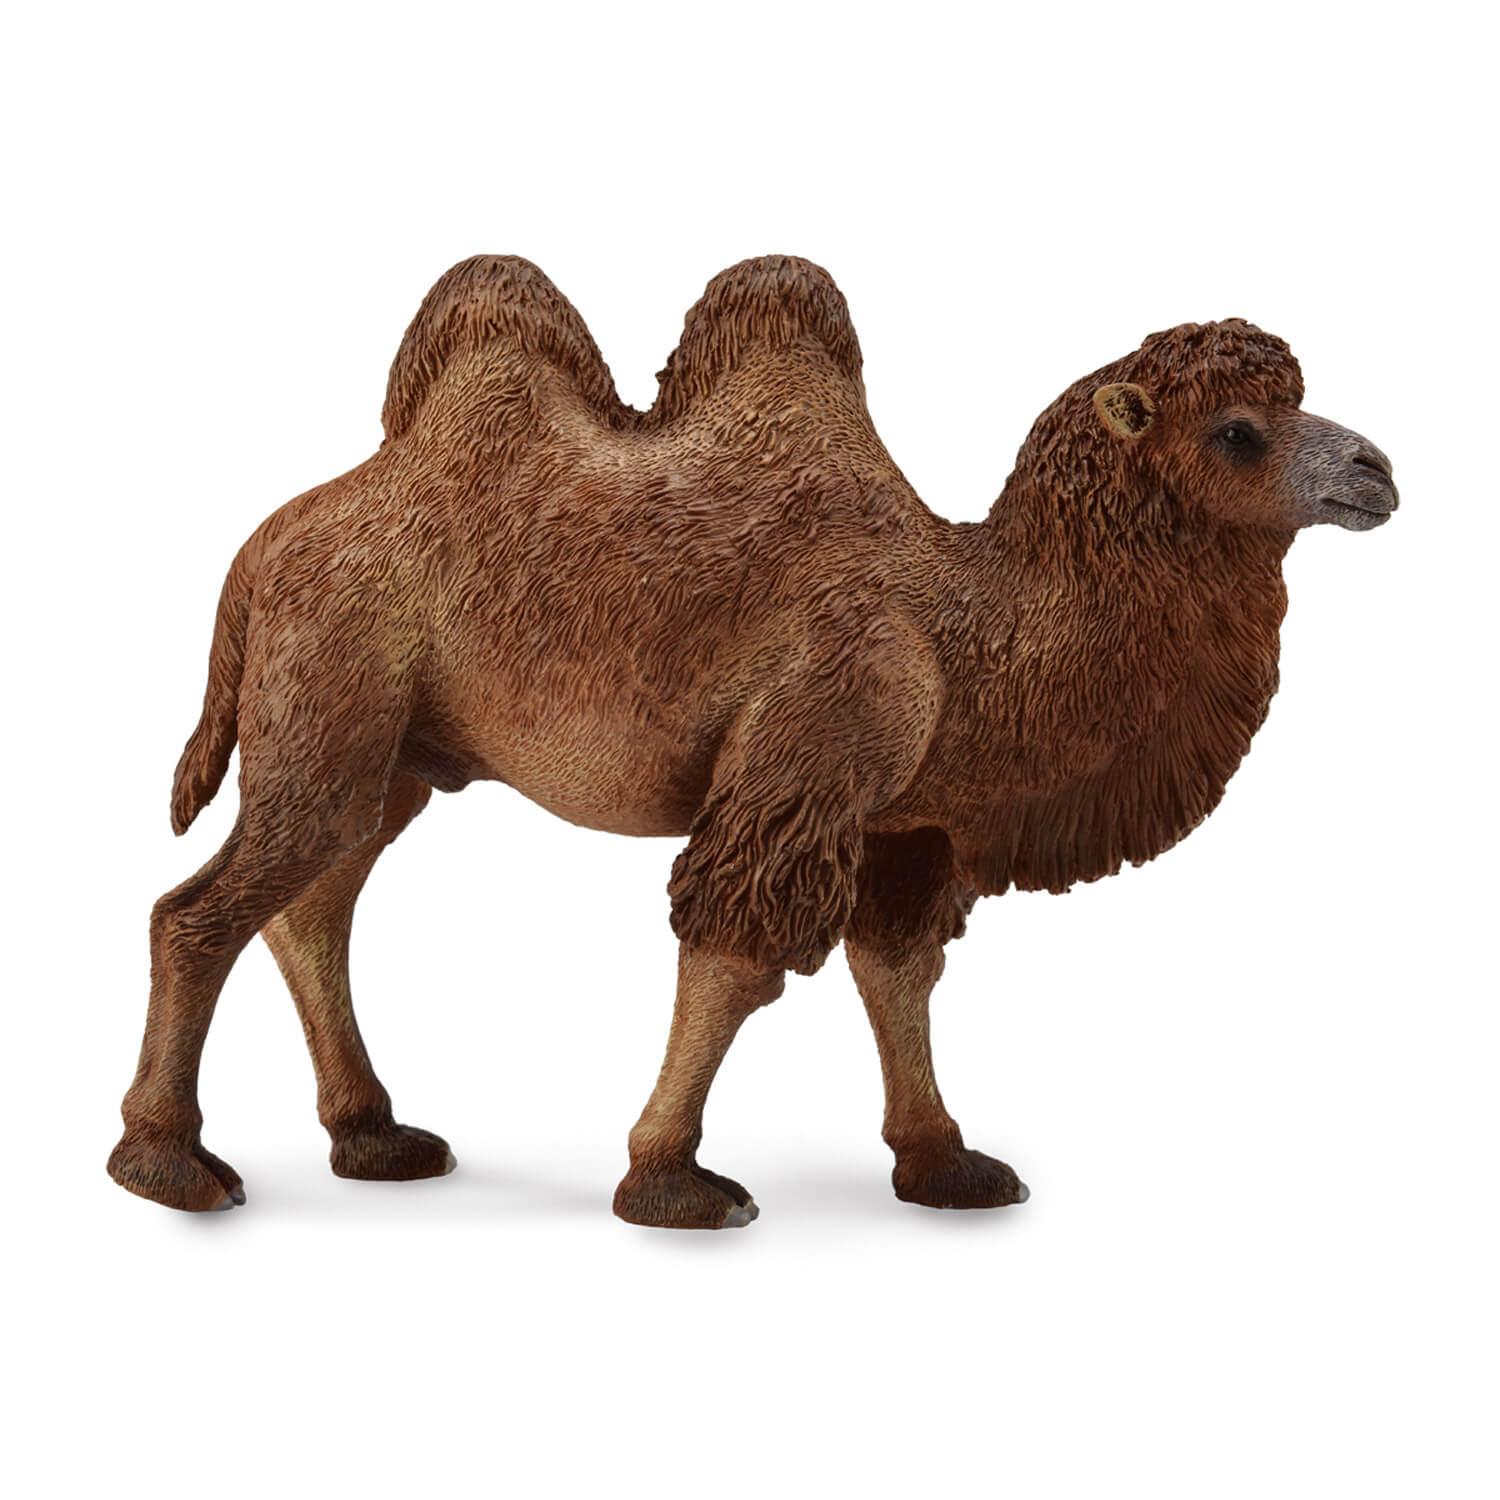 figurineâ animauxâ sauvages (l):â chameau de bactriane